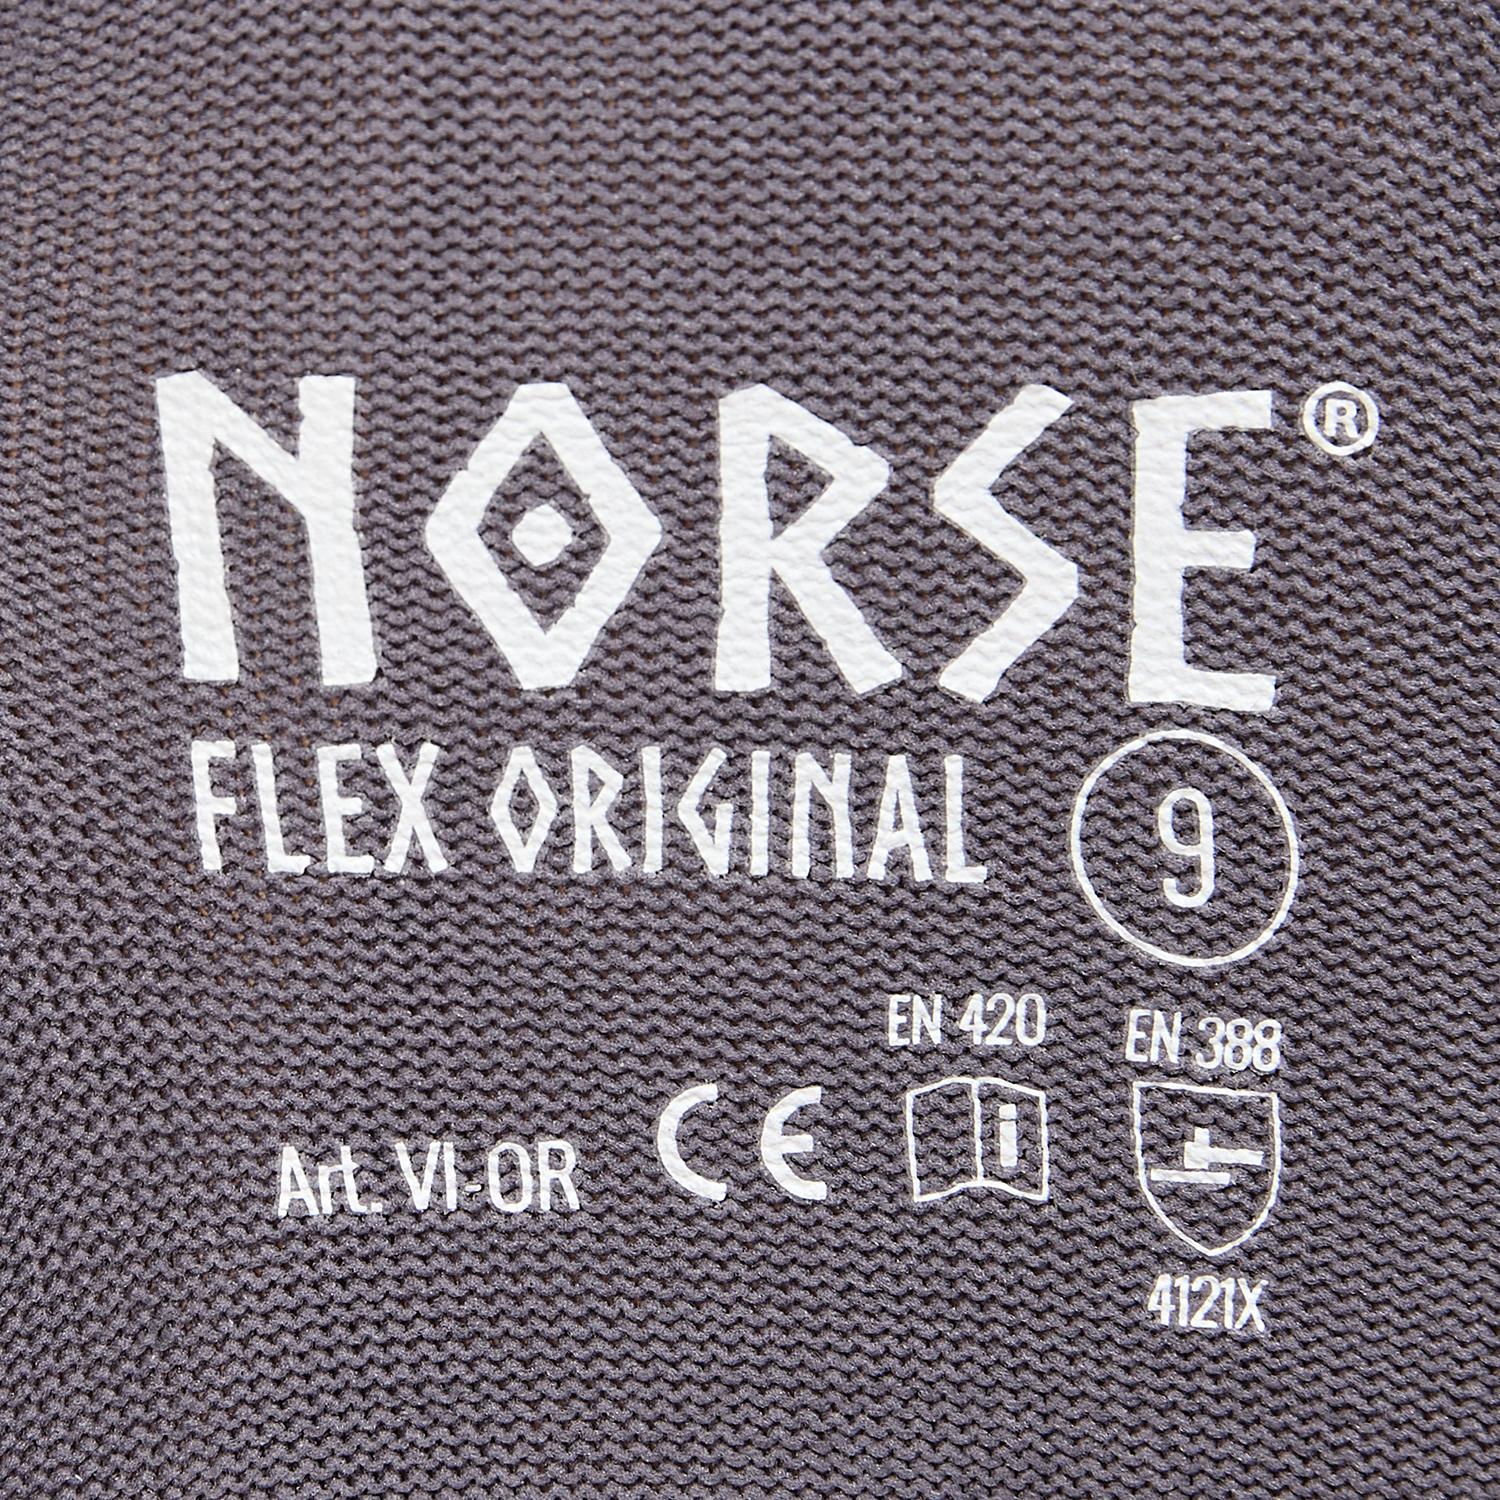 NORSE Flex Original montagehandschoenen maat 9